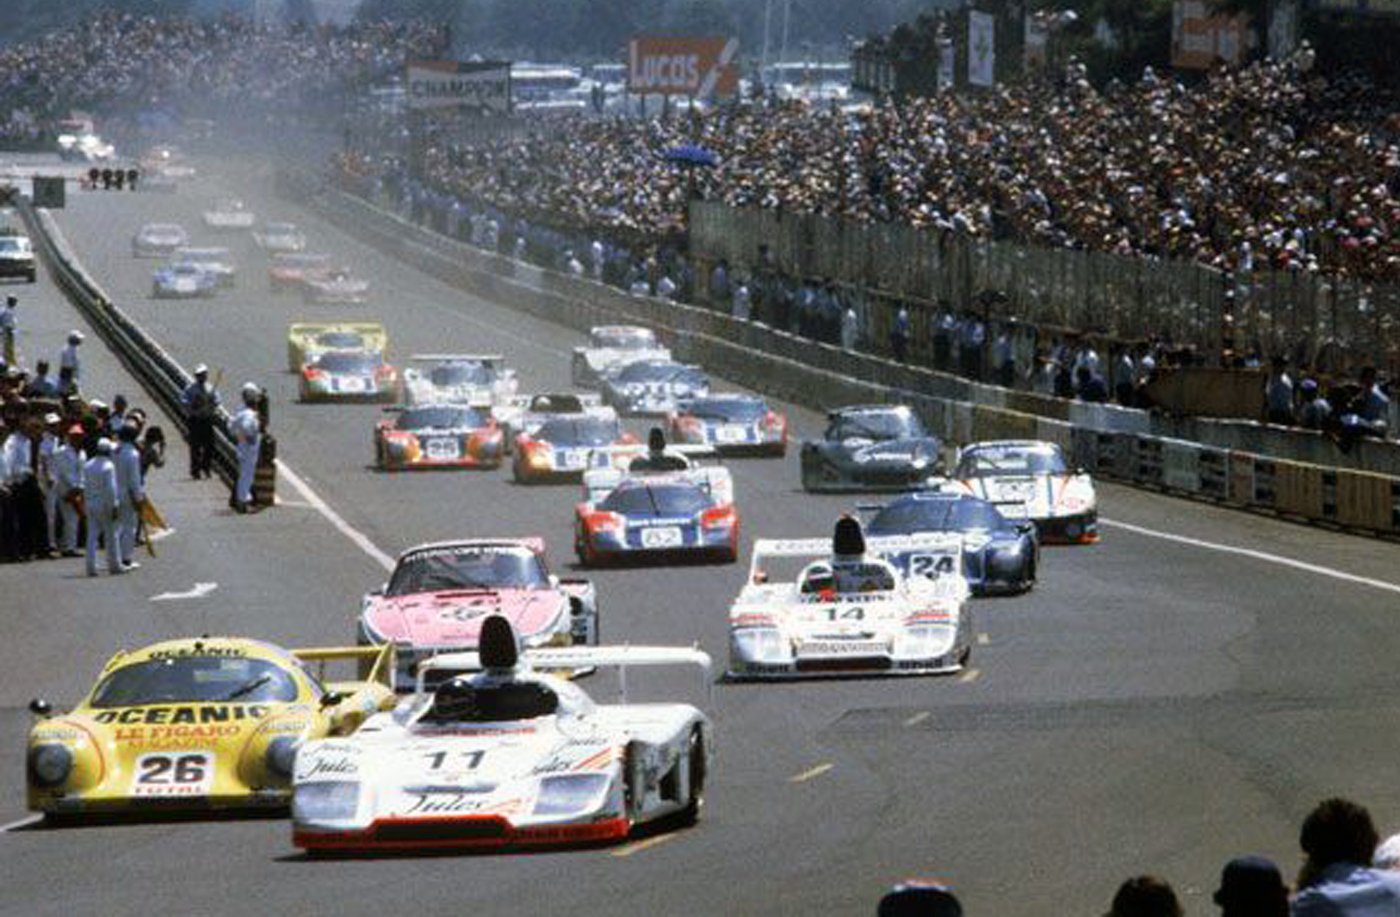 Spark 1:18 1981 Le Mans winning Porsche 935/81 diecast model car review